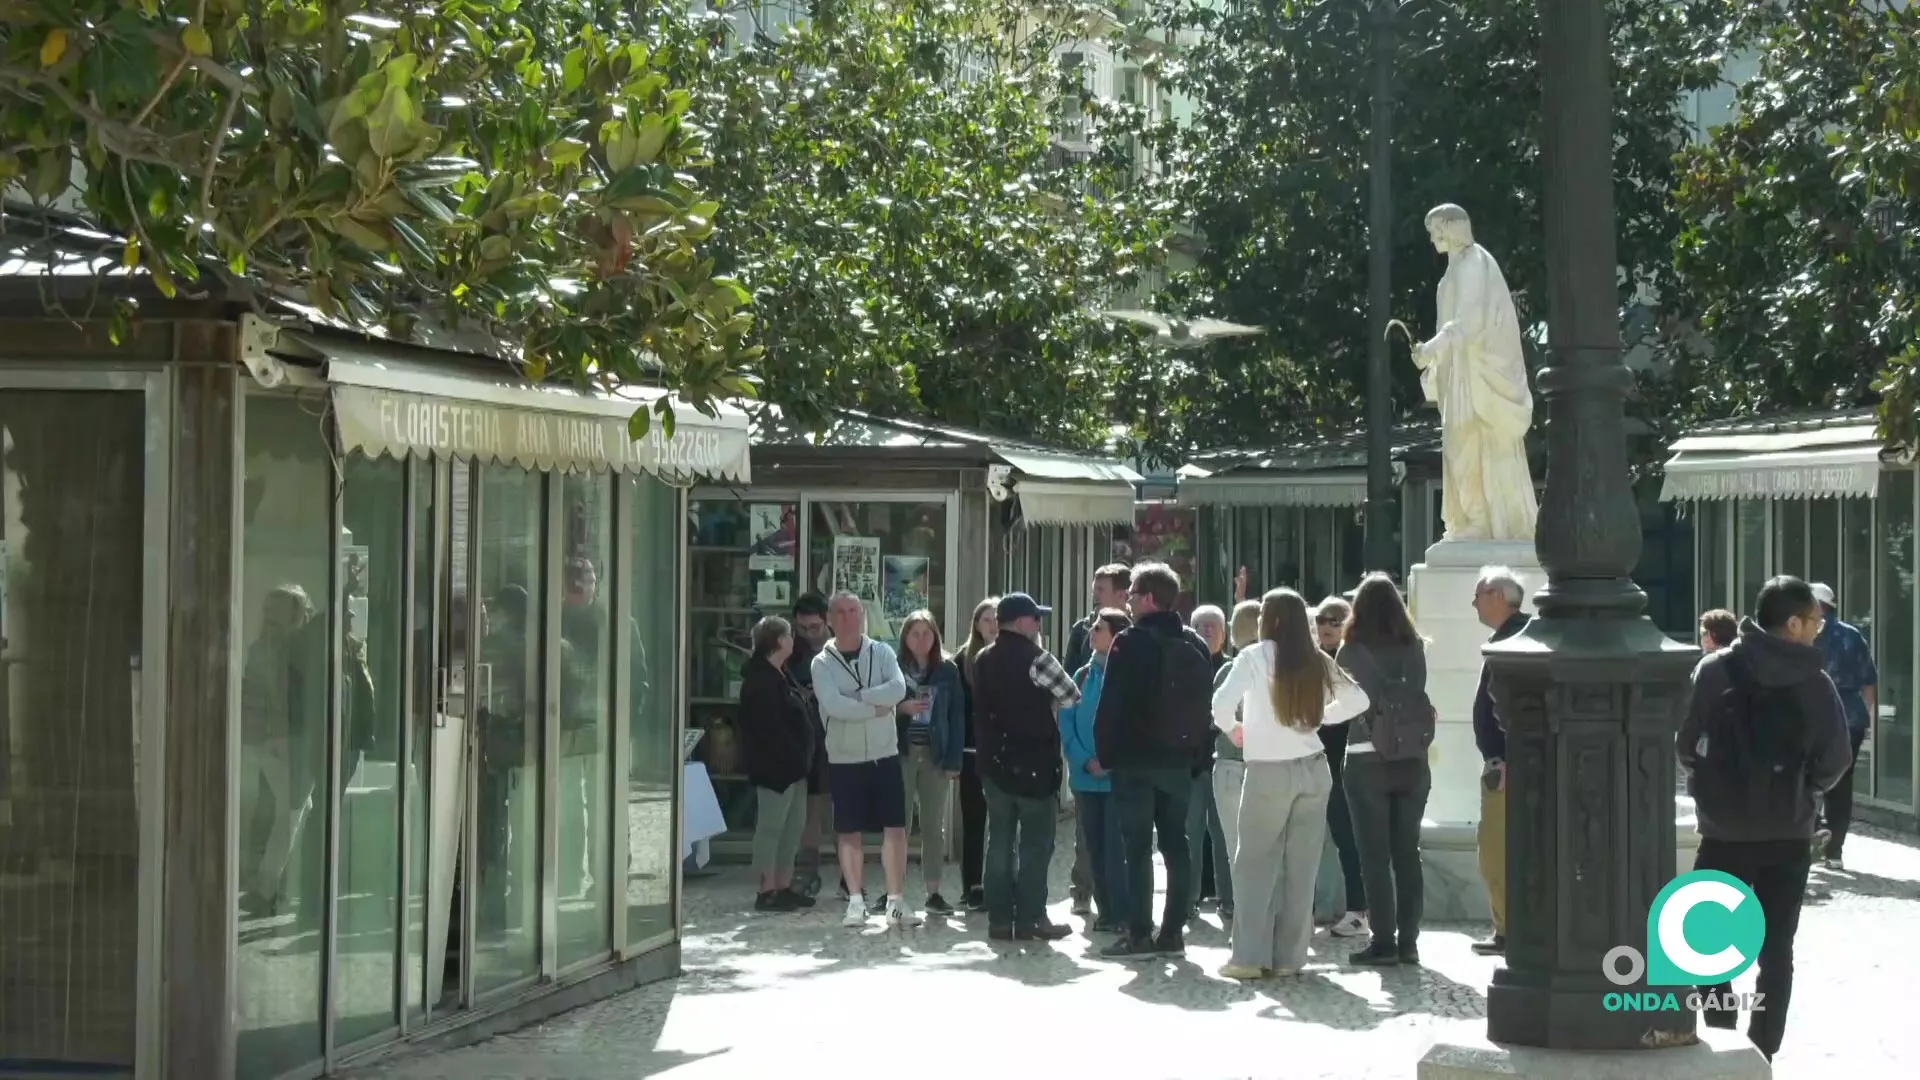 Grupo de turistas junto a la estatua de Columela en la plaza Topete